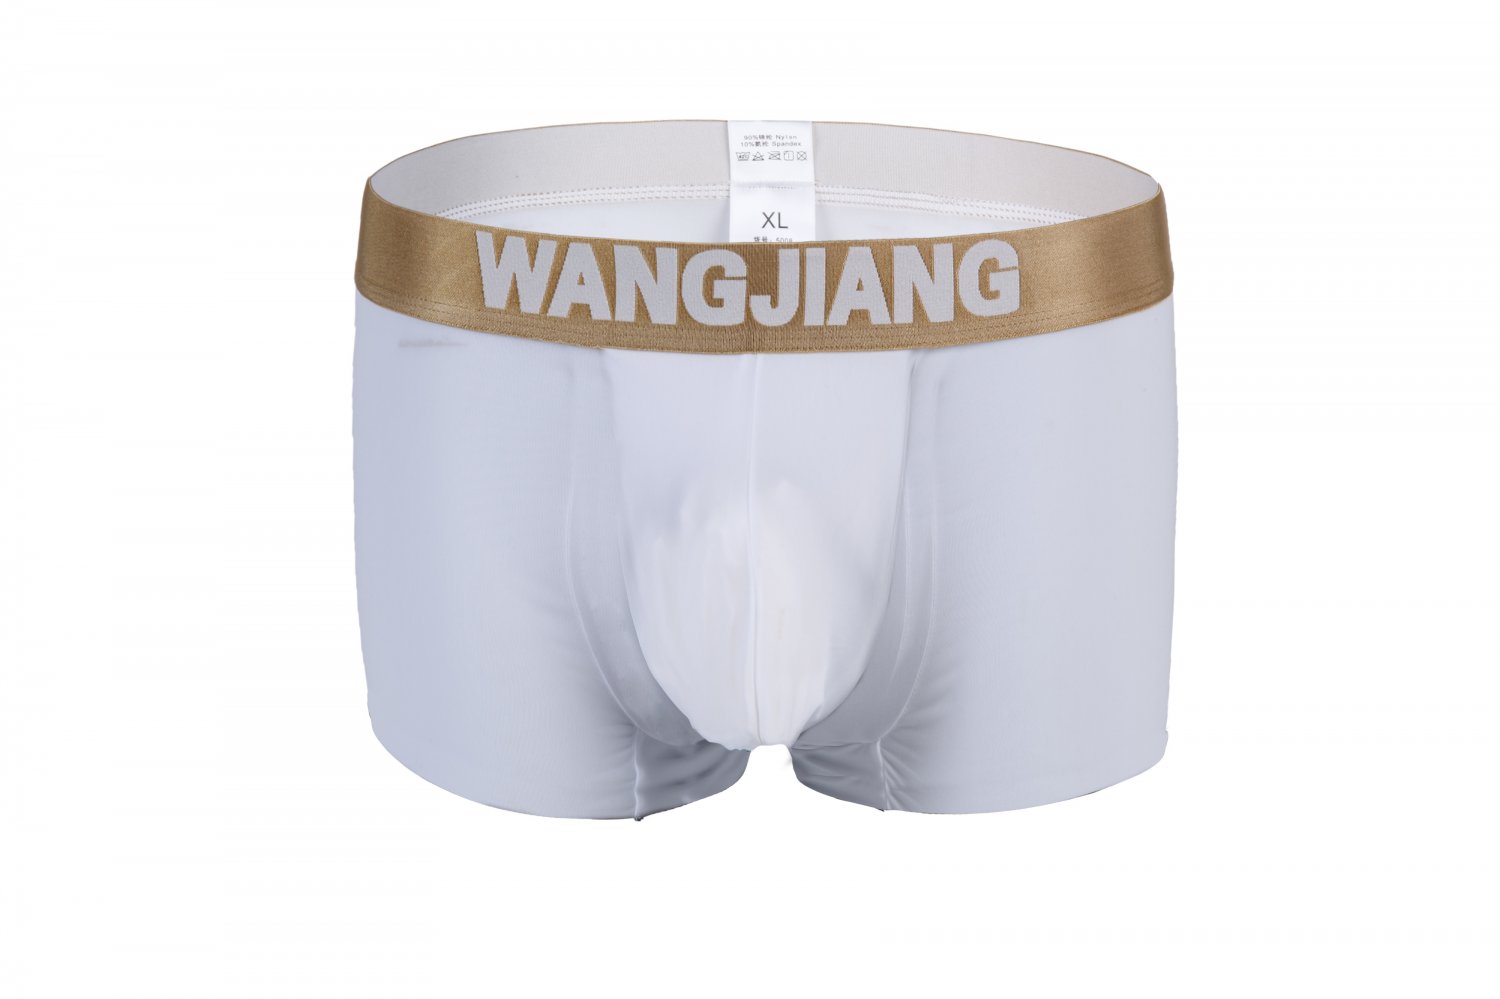 White 3pcs Men's sexy underwear ice silky pouch boxer briefs #5008PJ